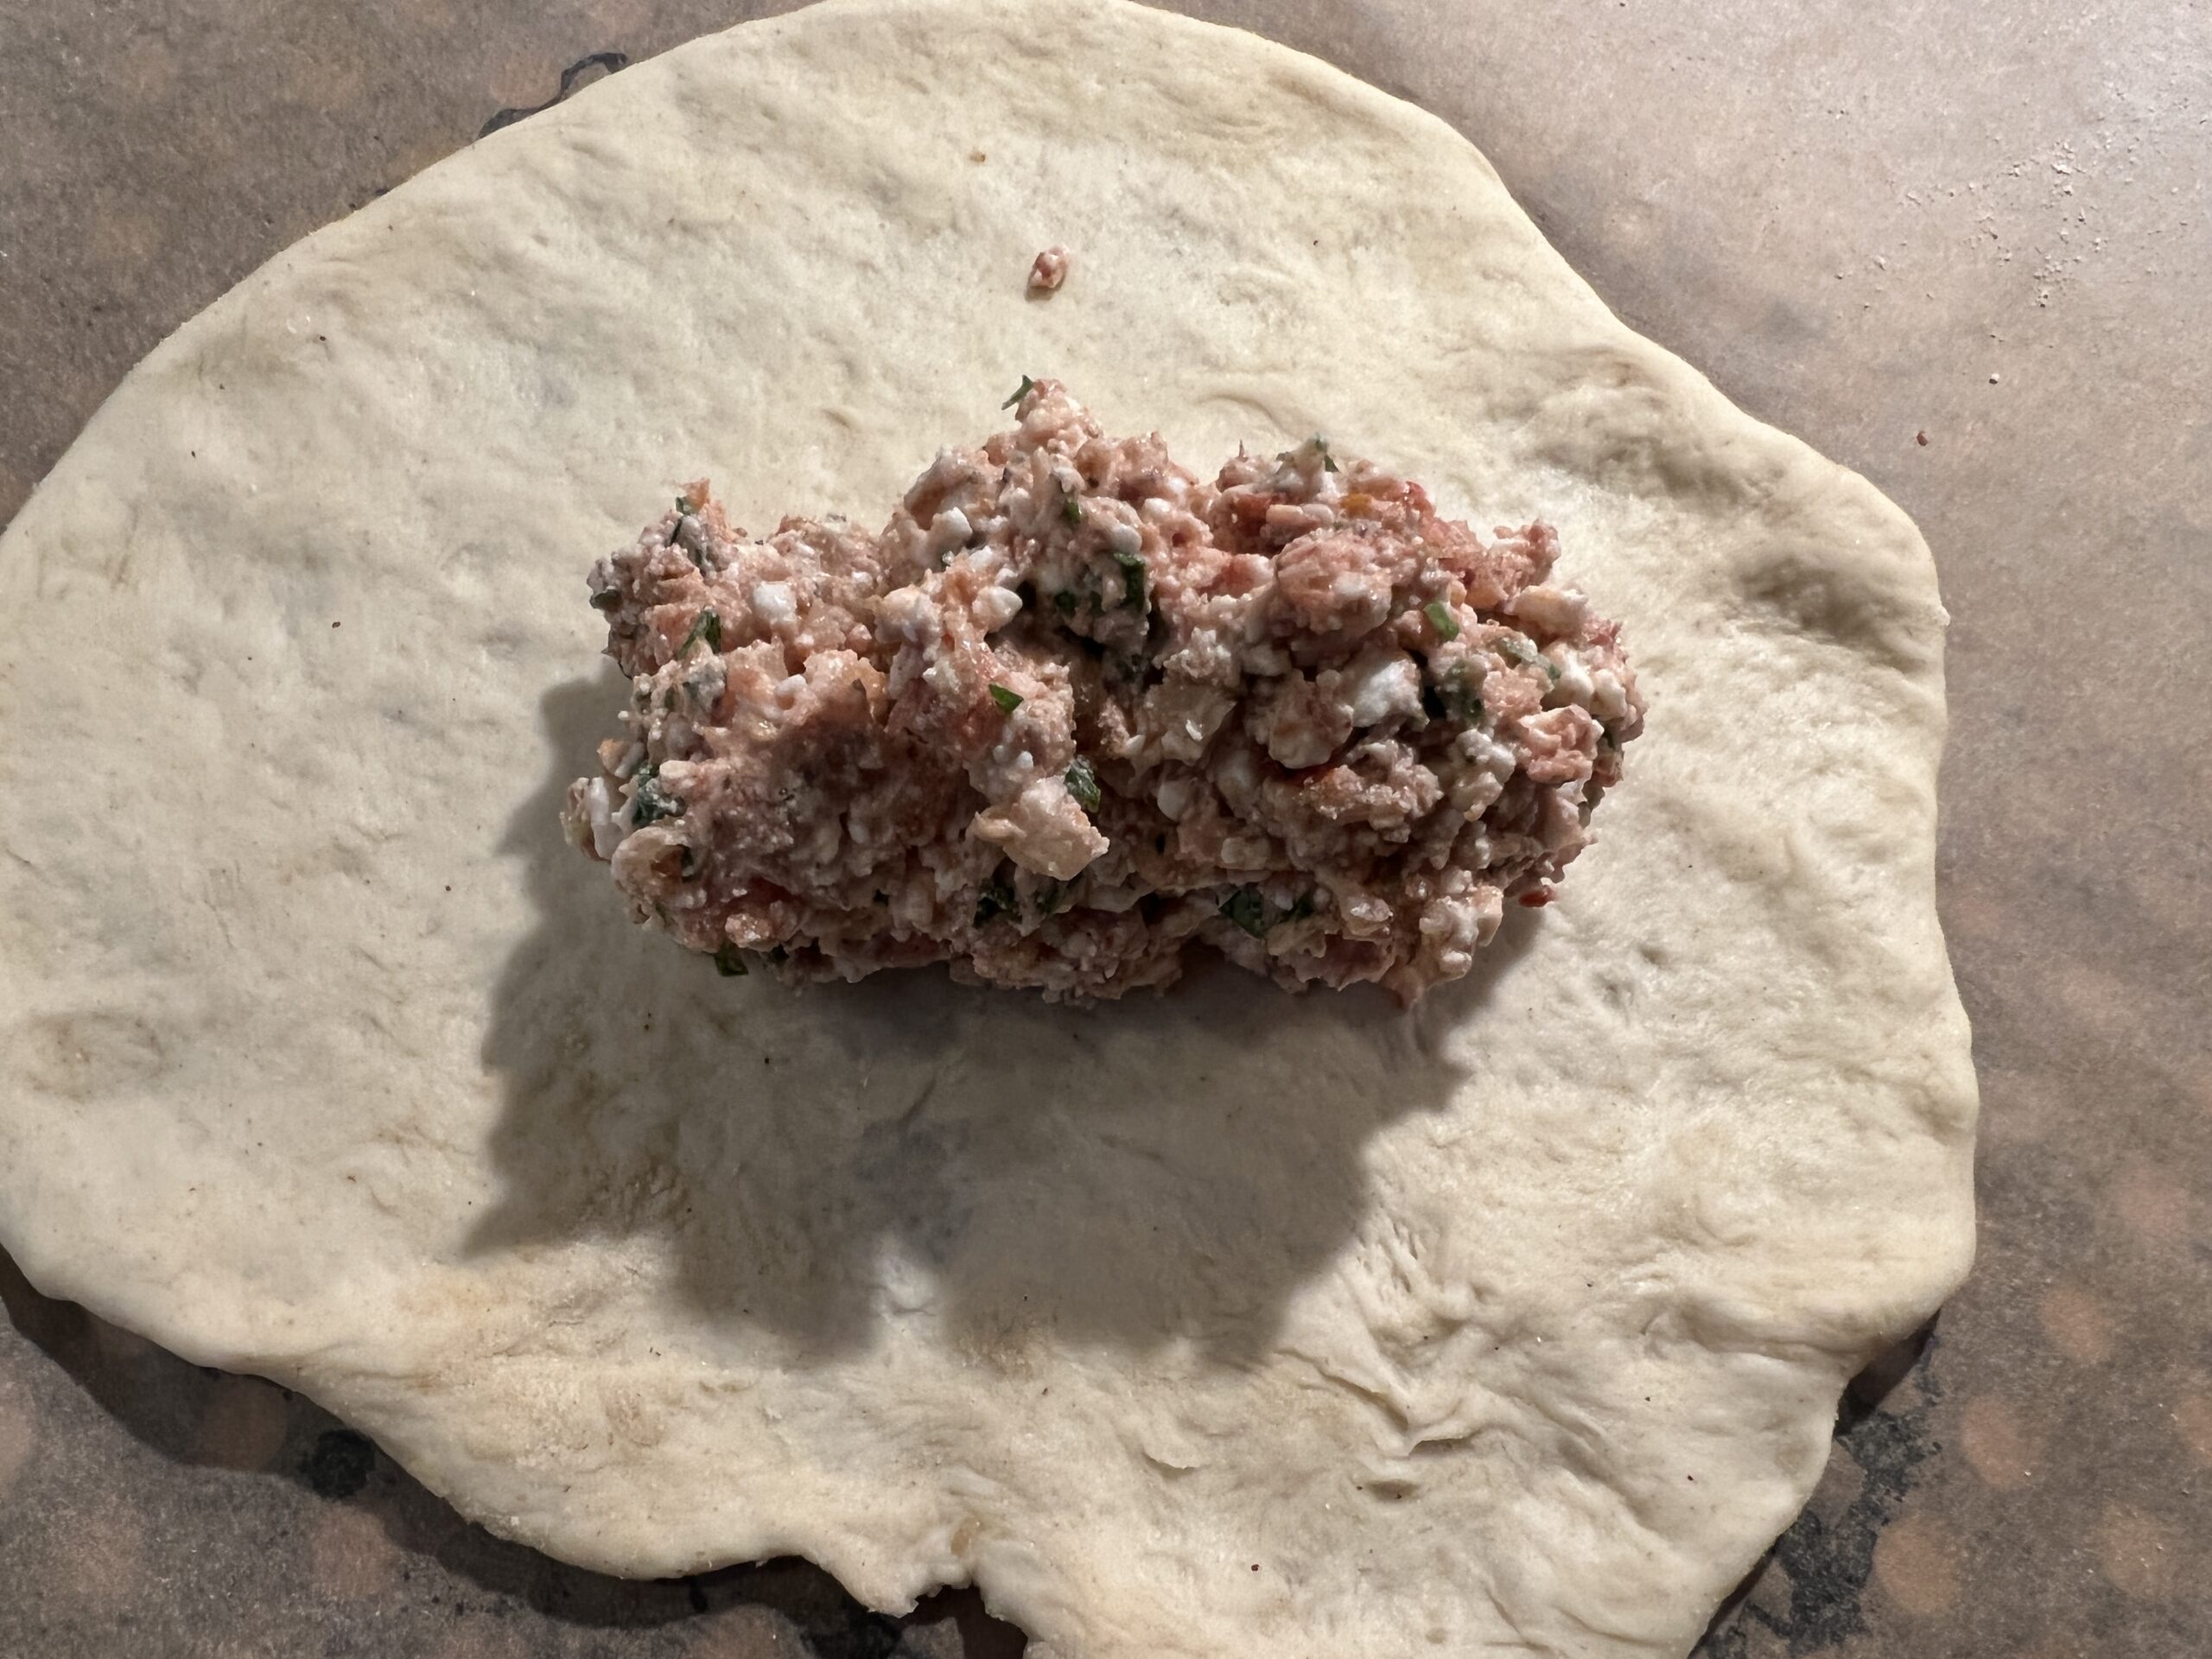 Lebanese Feta Man’oushe Recipe